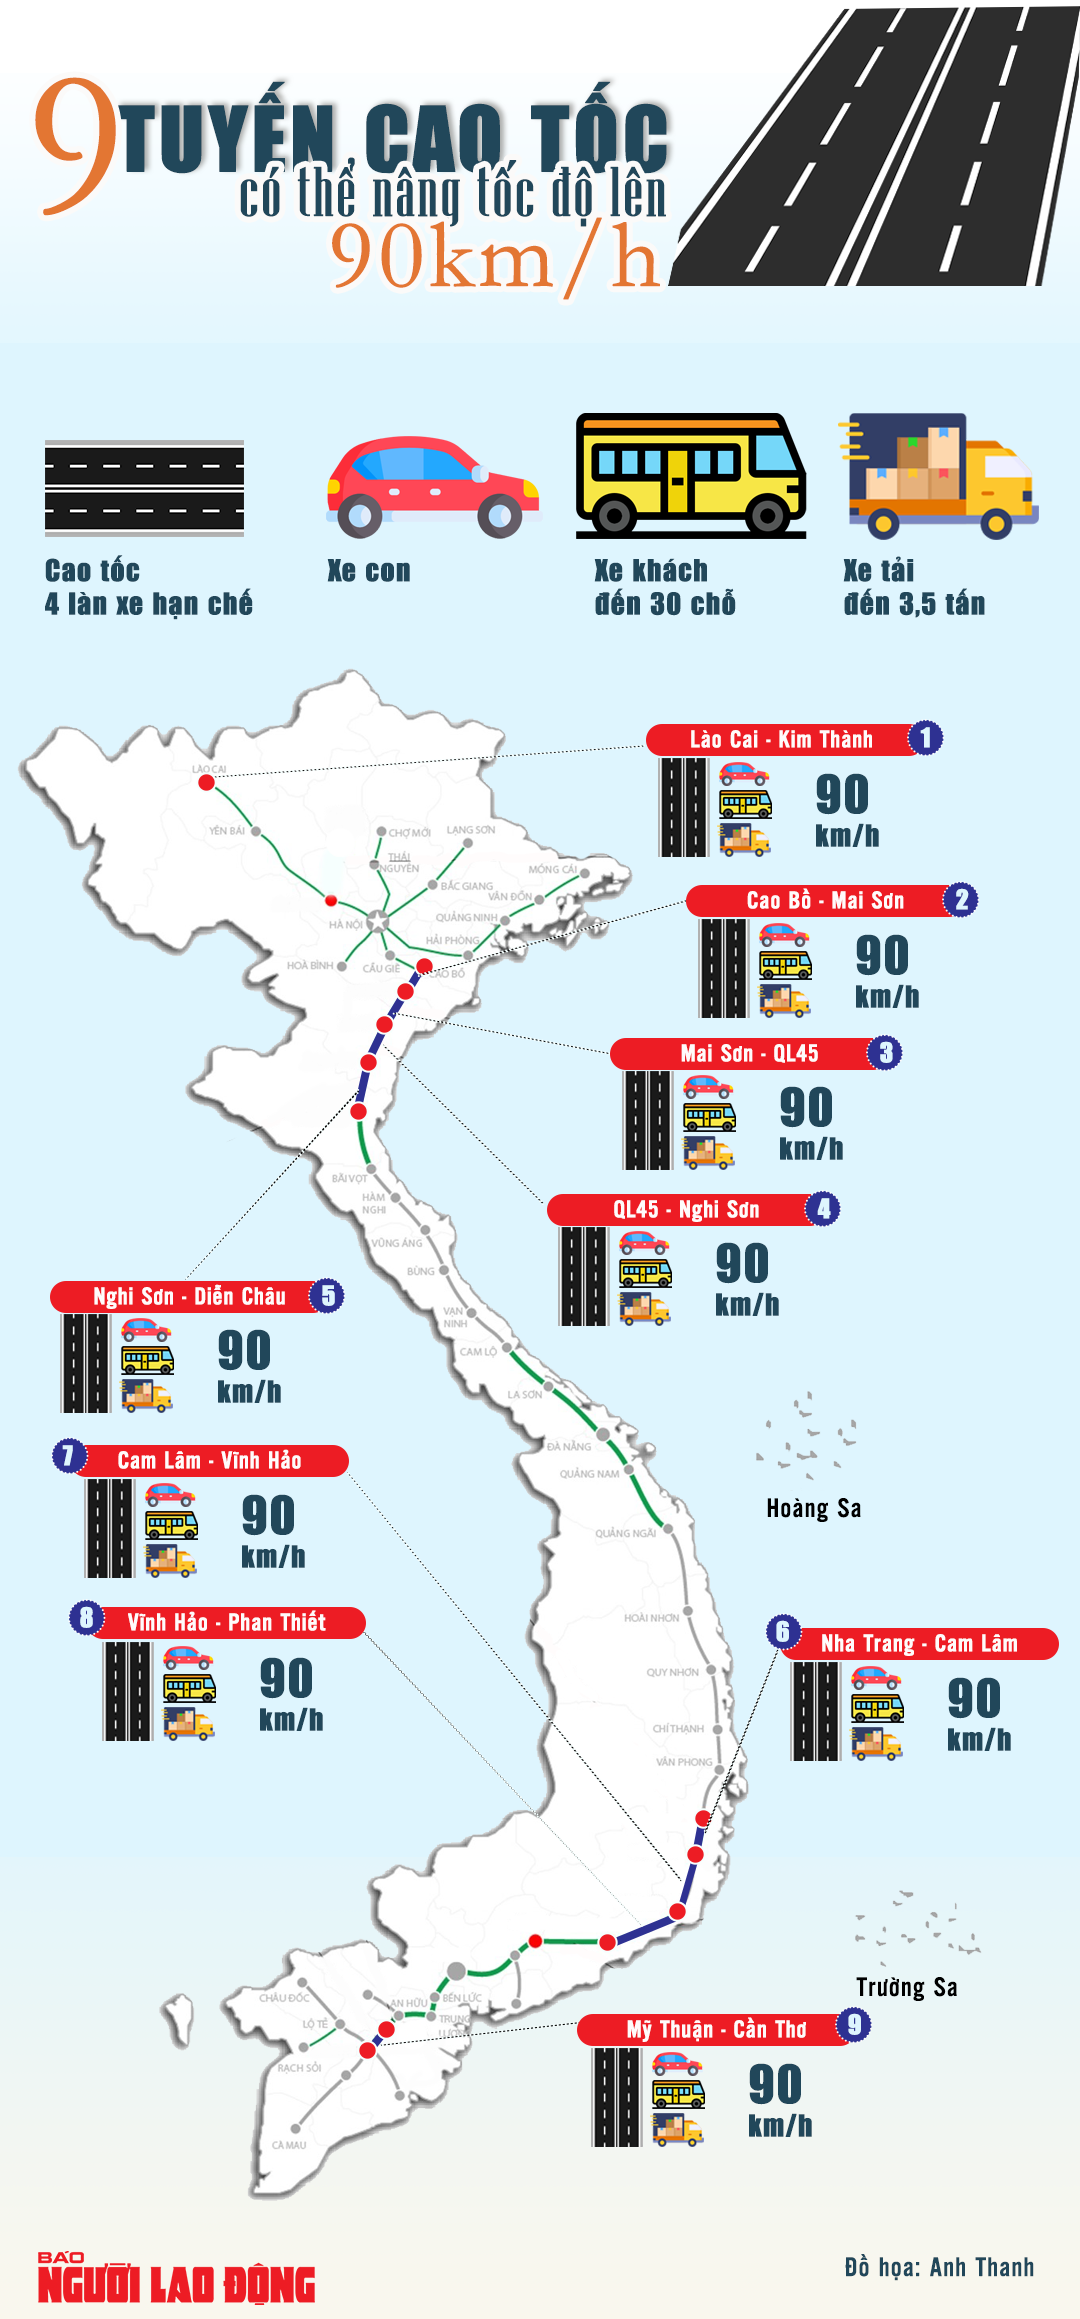 [Infographic] 9 tuyến cao tốc 4 làn hạn chế có thể nâng tốc độ tối đa 90 km/h- Ảnh 1.